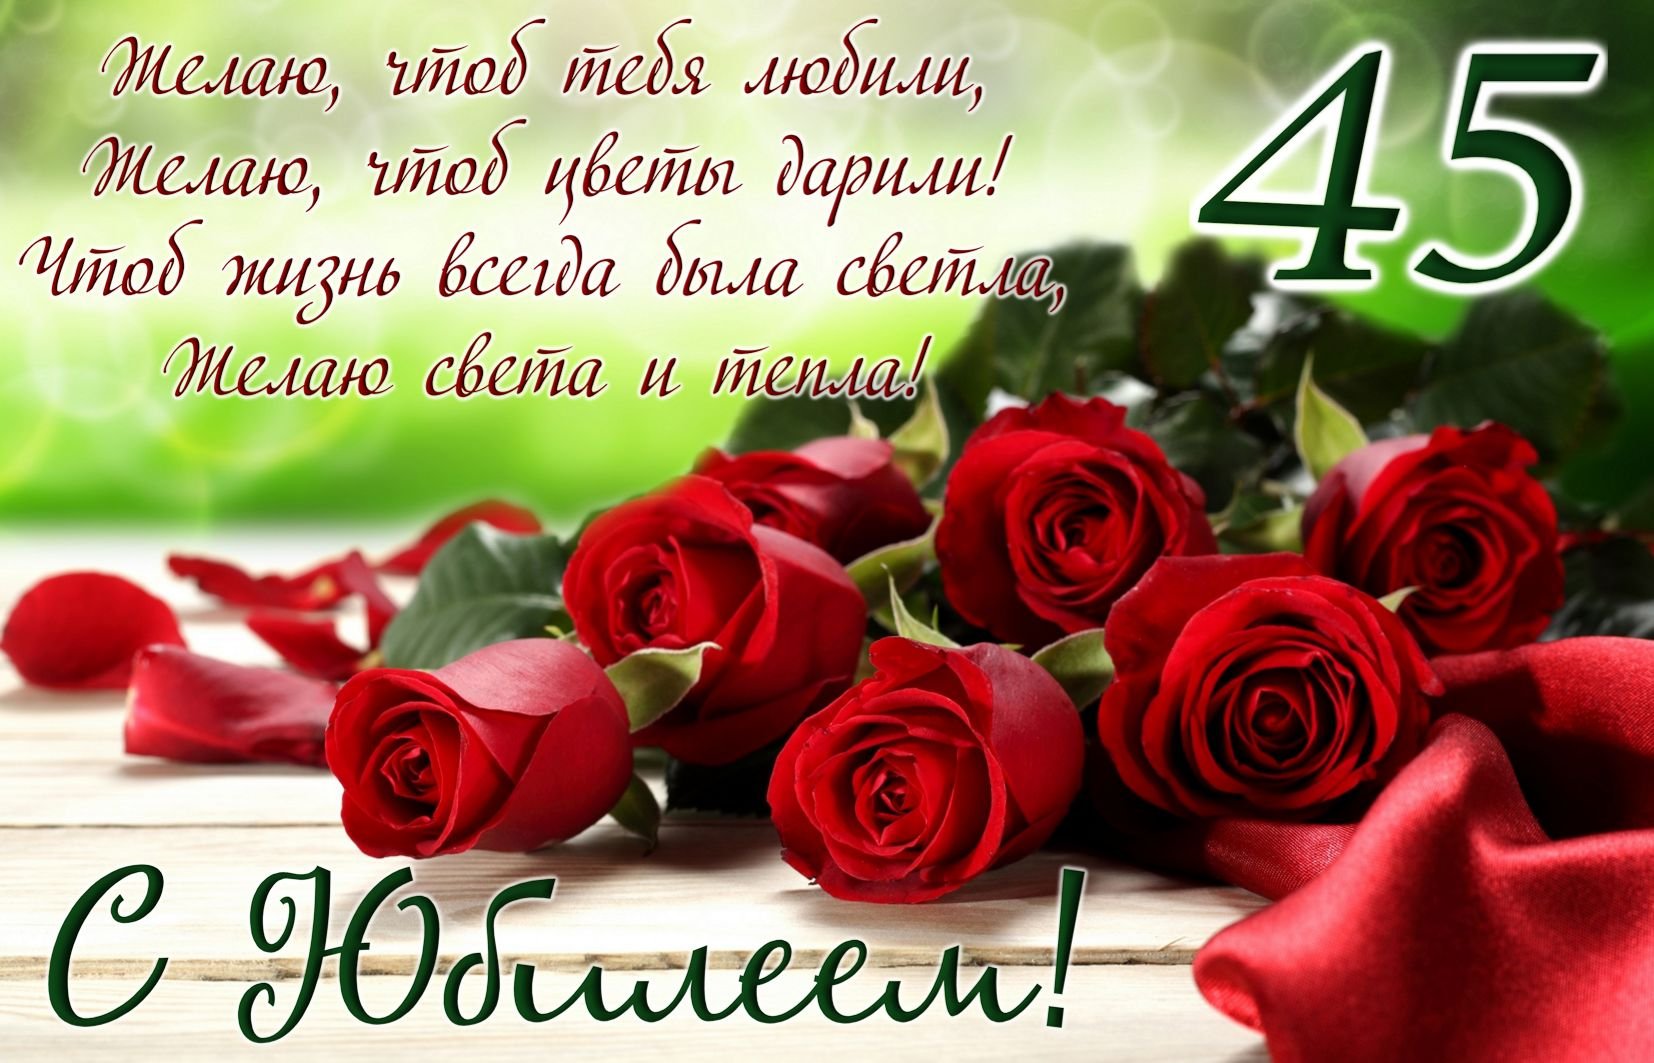 Поздравления с днем рождения 45 лет Оксане